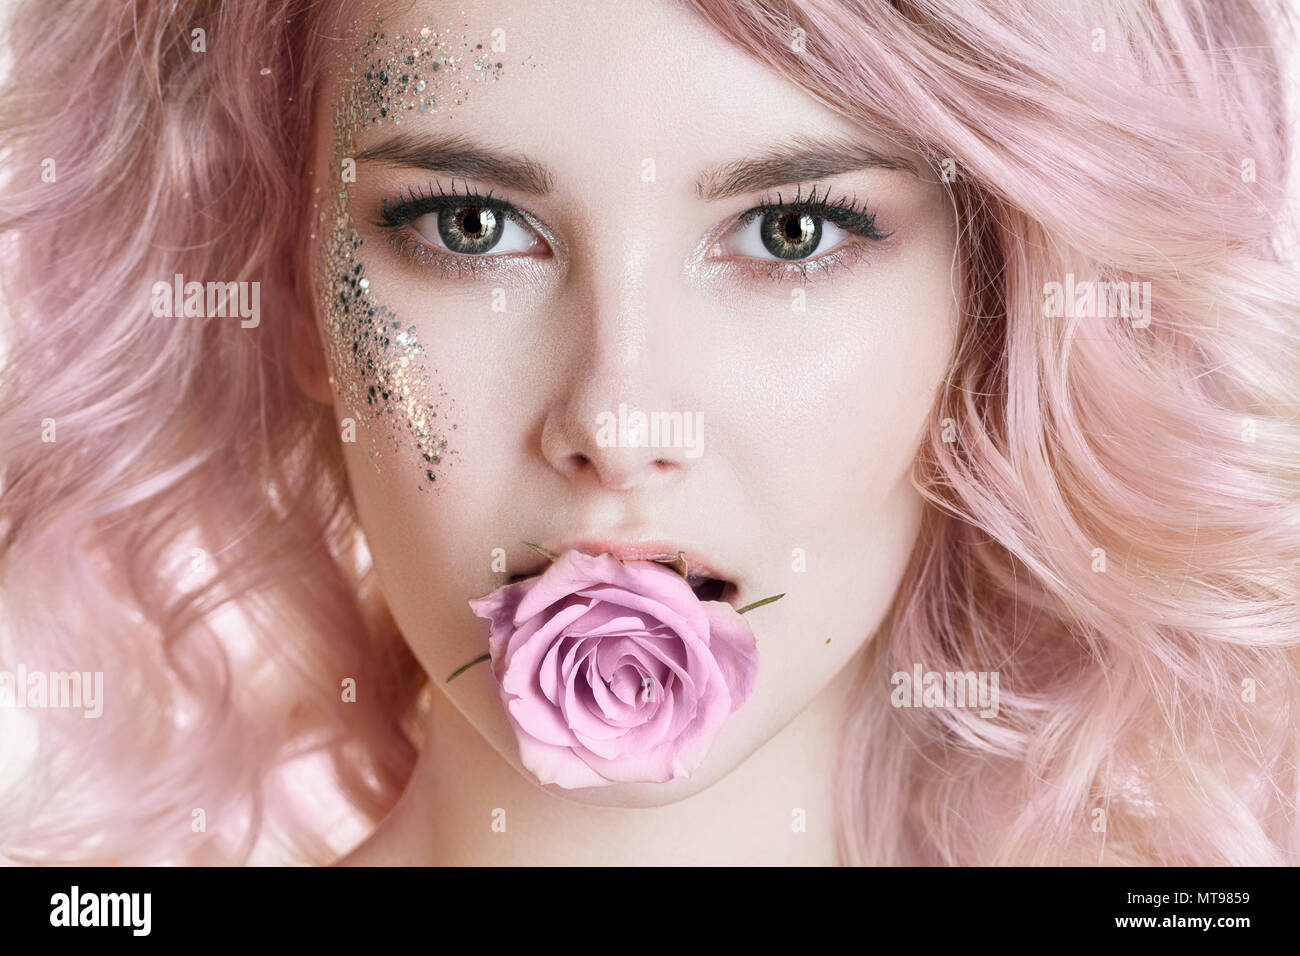 Capelli colorati. La bellezza delle donne Ritratto di giovane donna ricci con capelli rosa, arte perfetta per il make-up con glitter. Rose in bocca Foto Stock